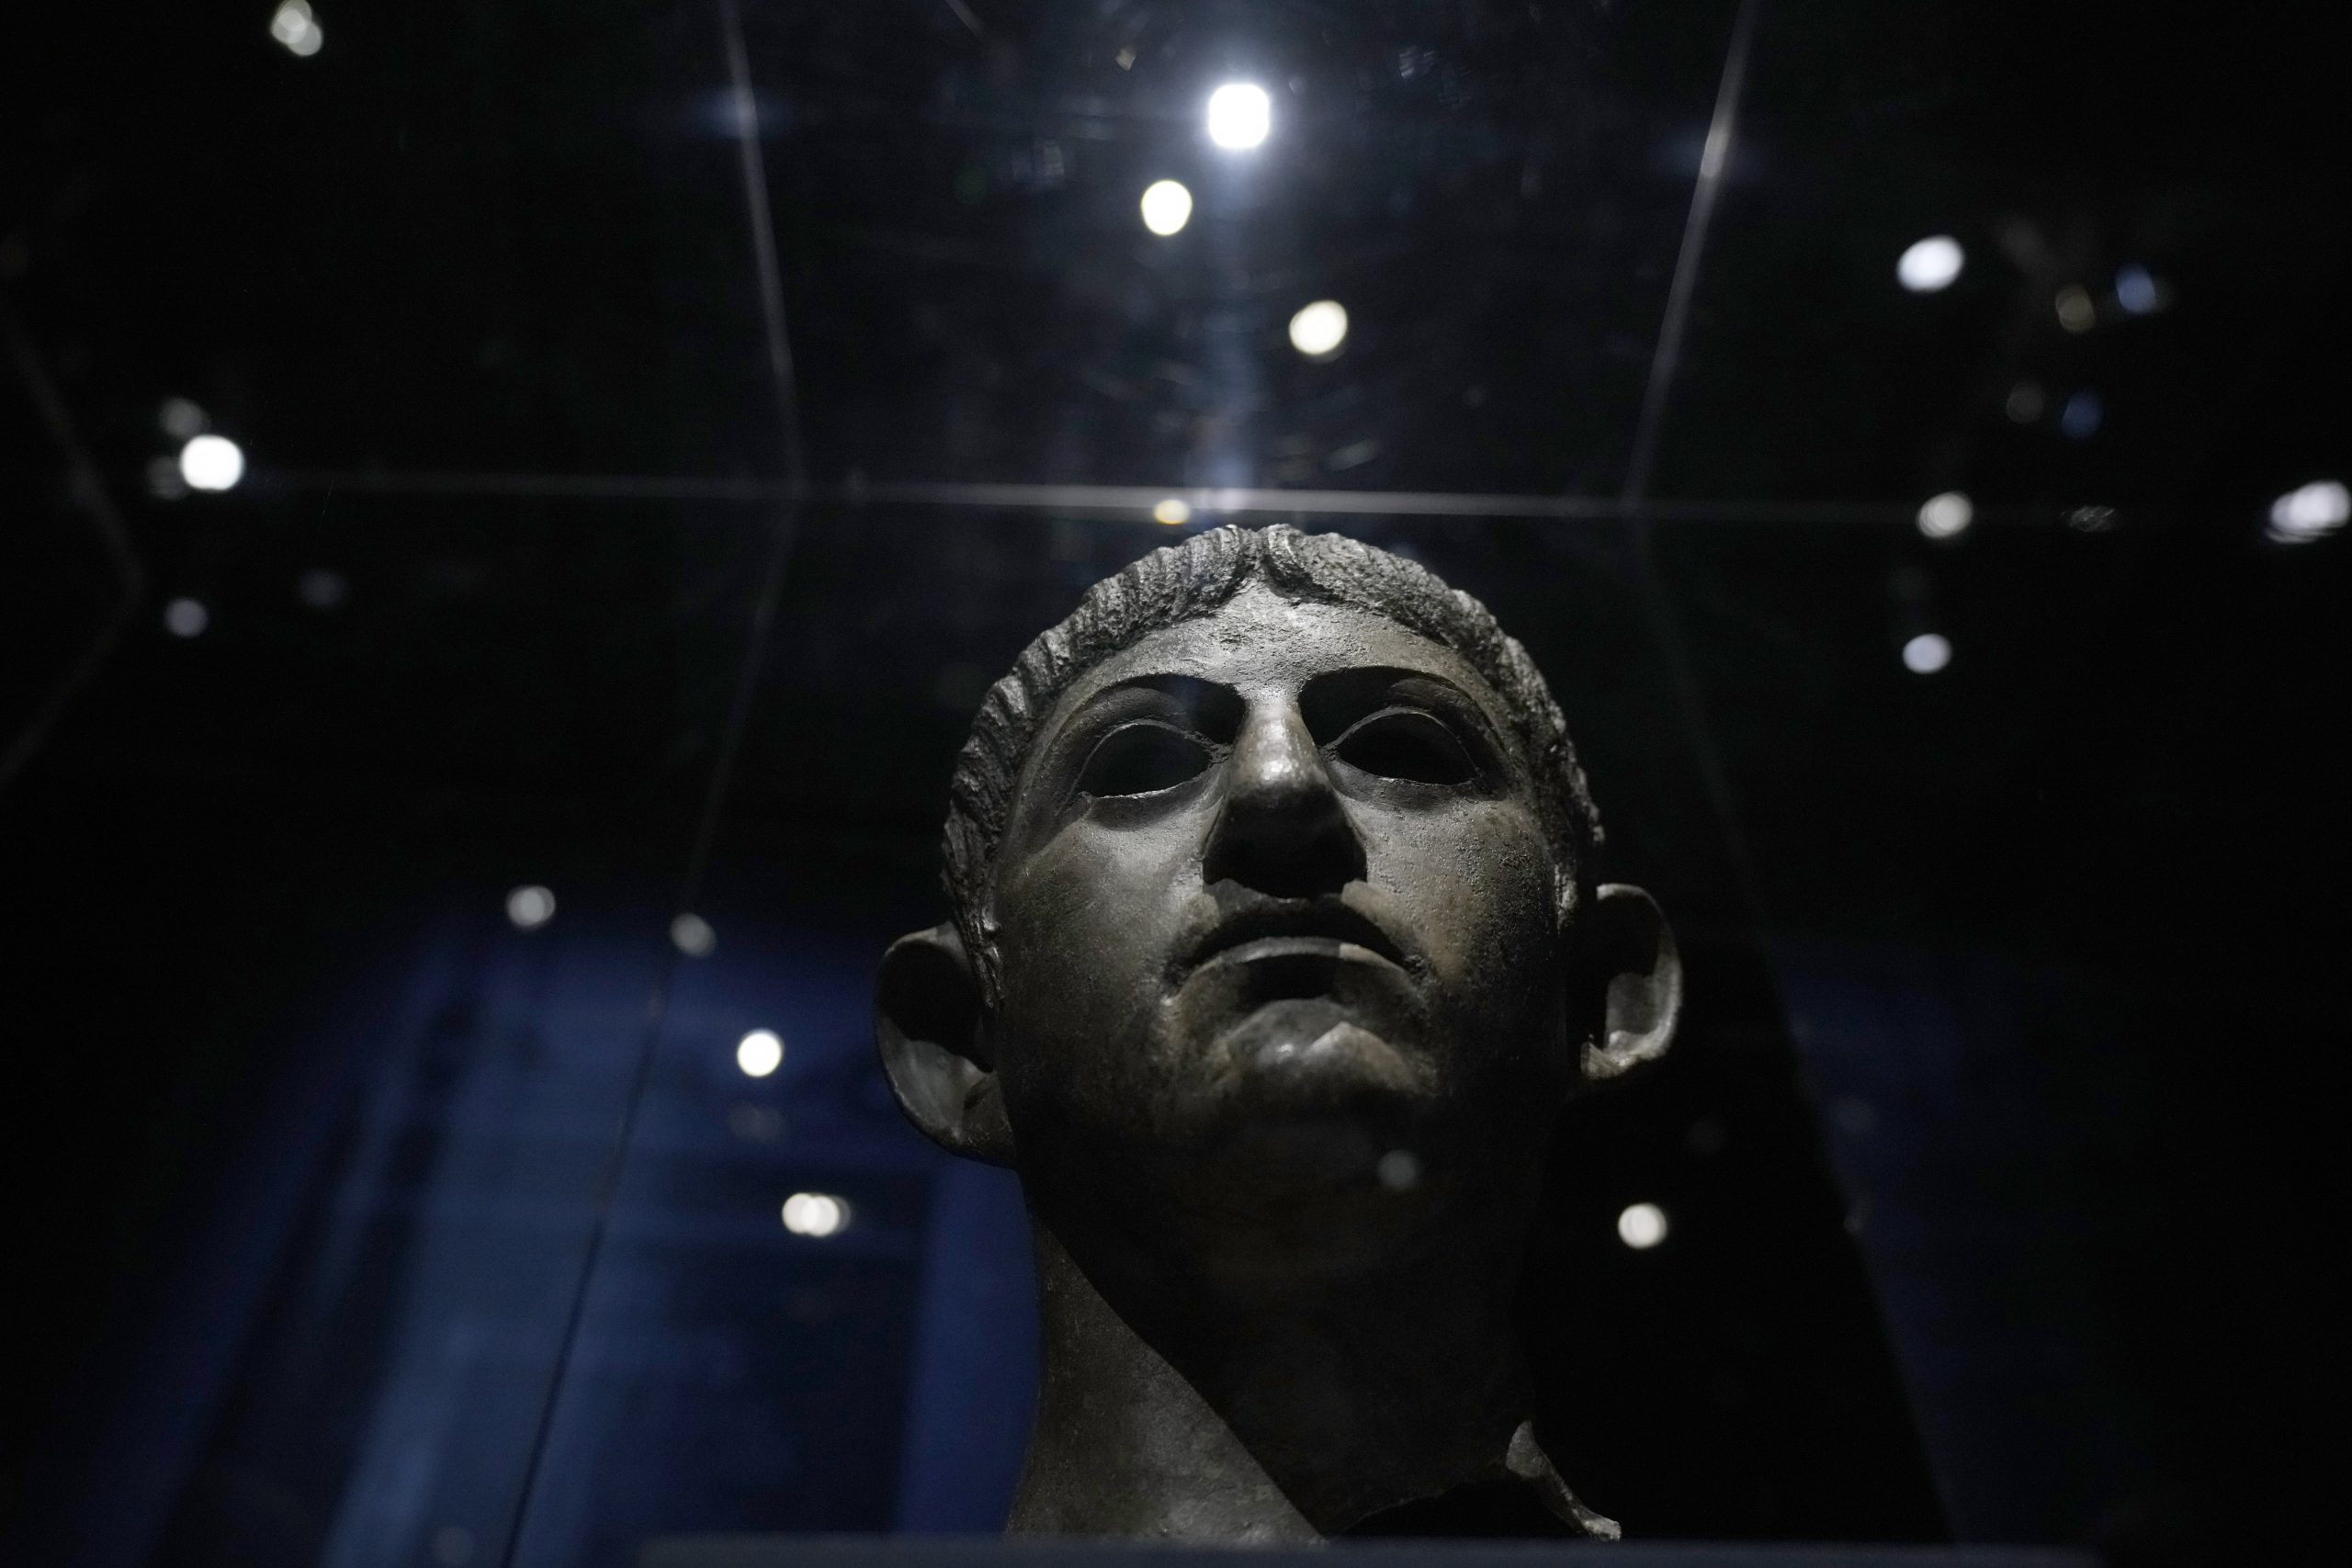 Loša reputacija: Novi pogled Britanskog muzeja na imperatora Nerona 1